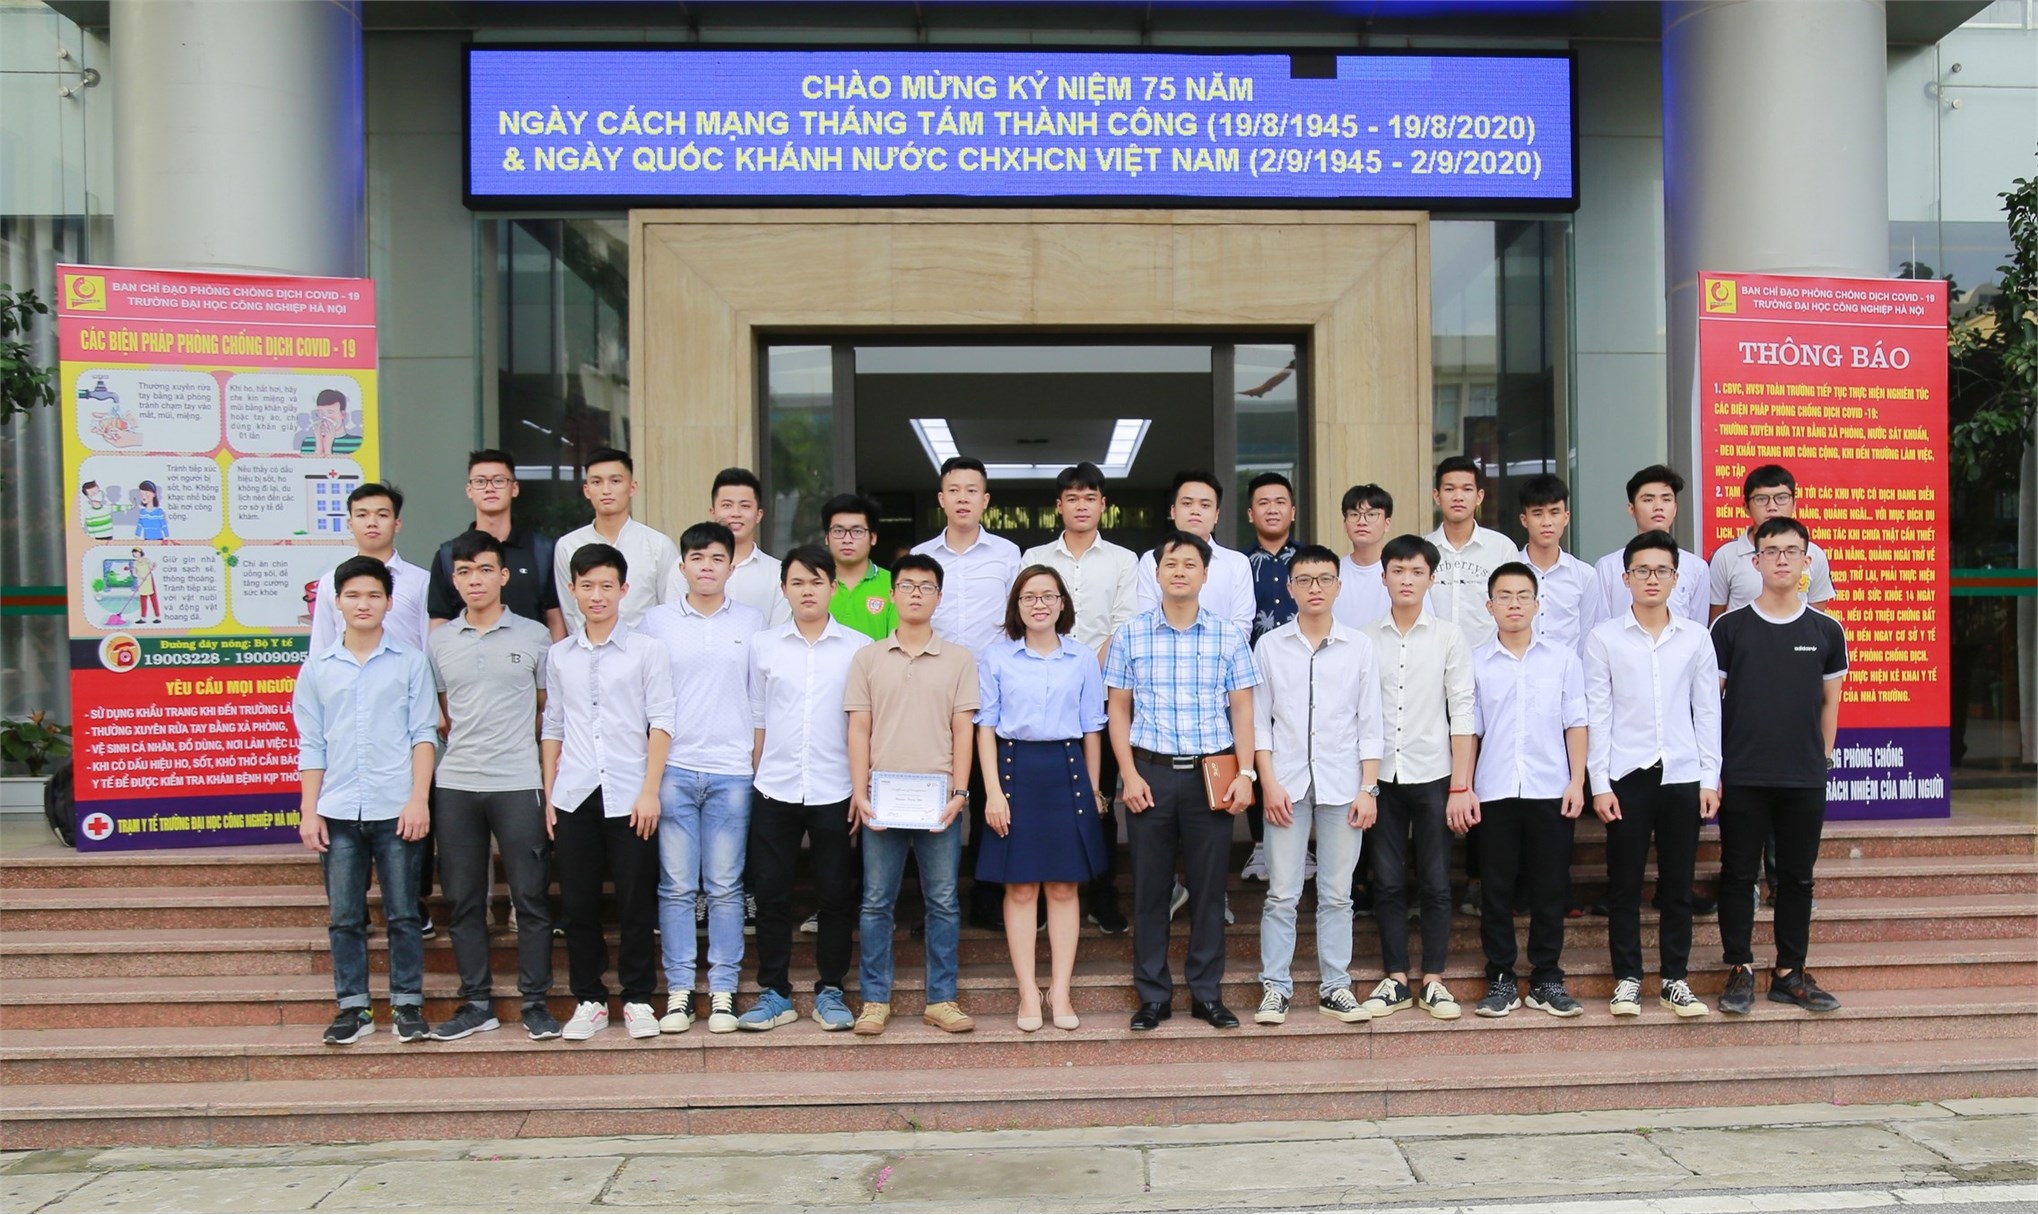 Sinh viên Trường Đại học Công nghiệp Hà Nội thăm `Nhà ở cũ của Hồ Chí Minh` tại Thành phố Liễu Châu, Trung Quốc